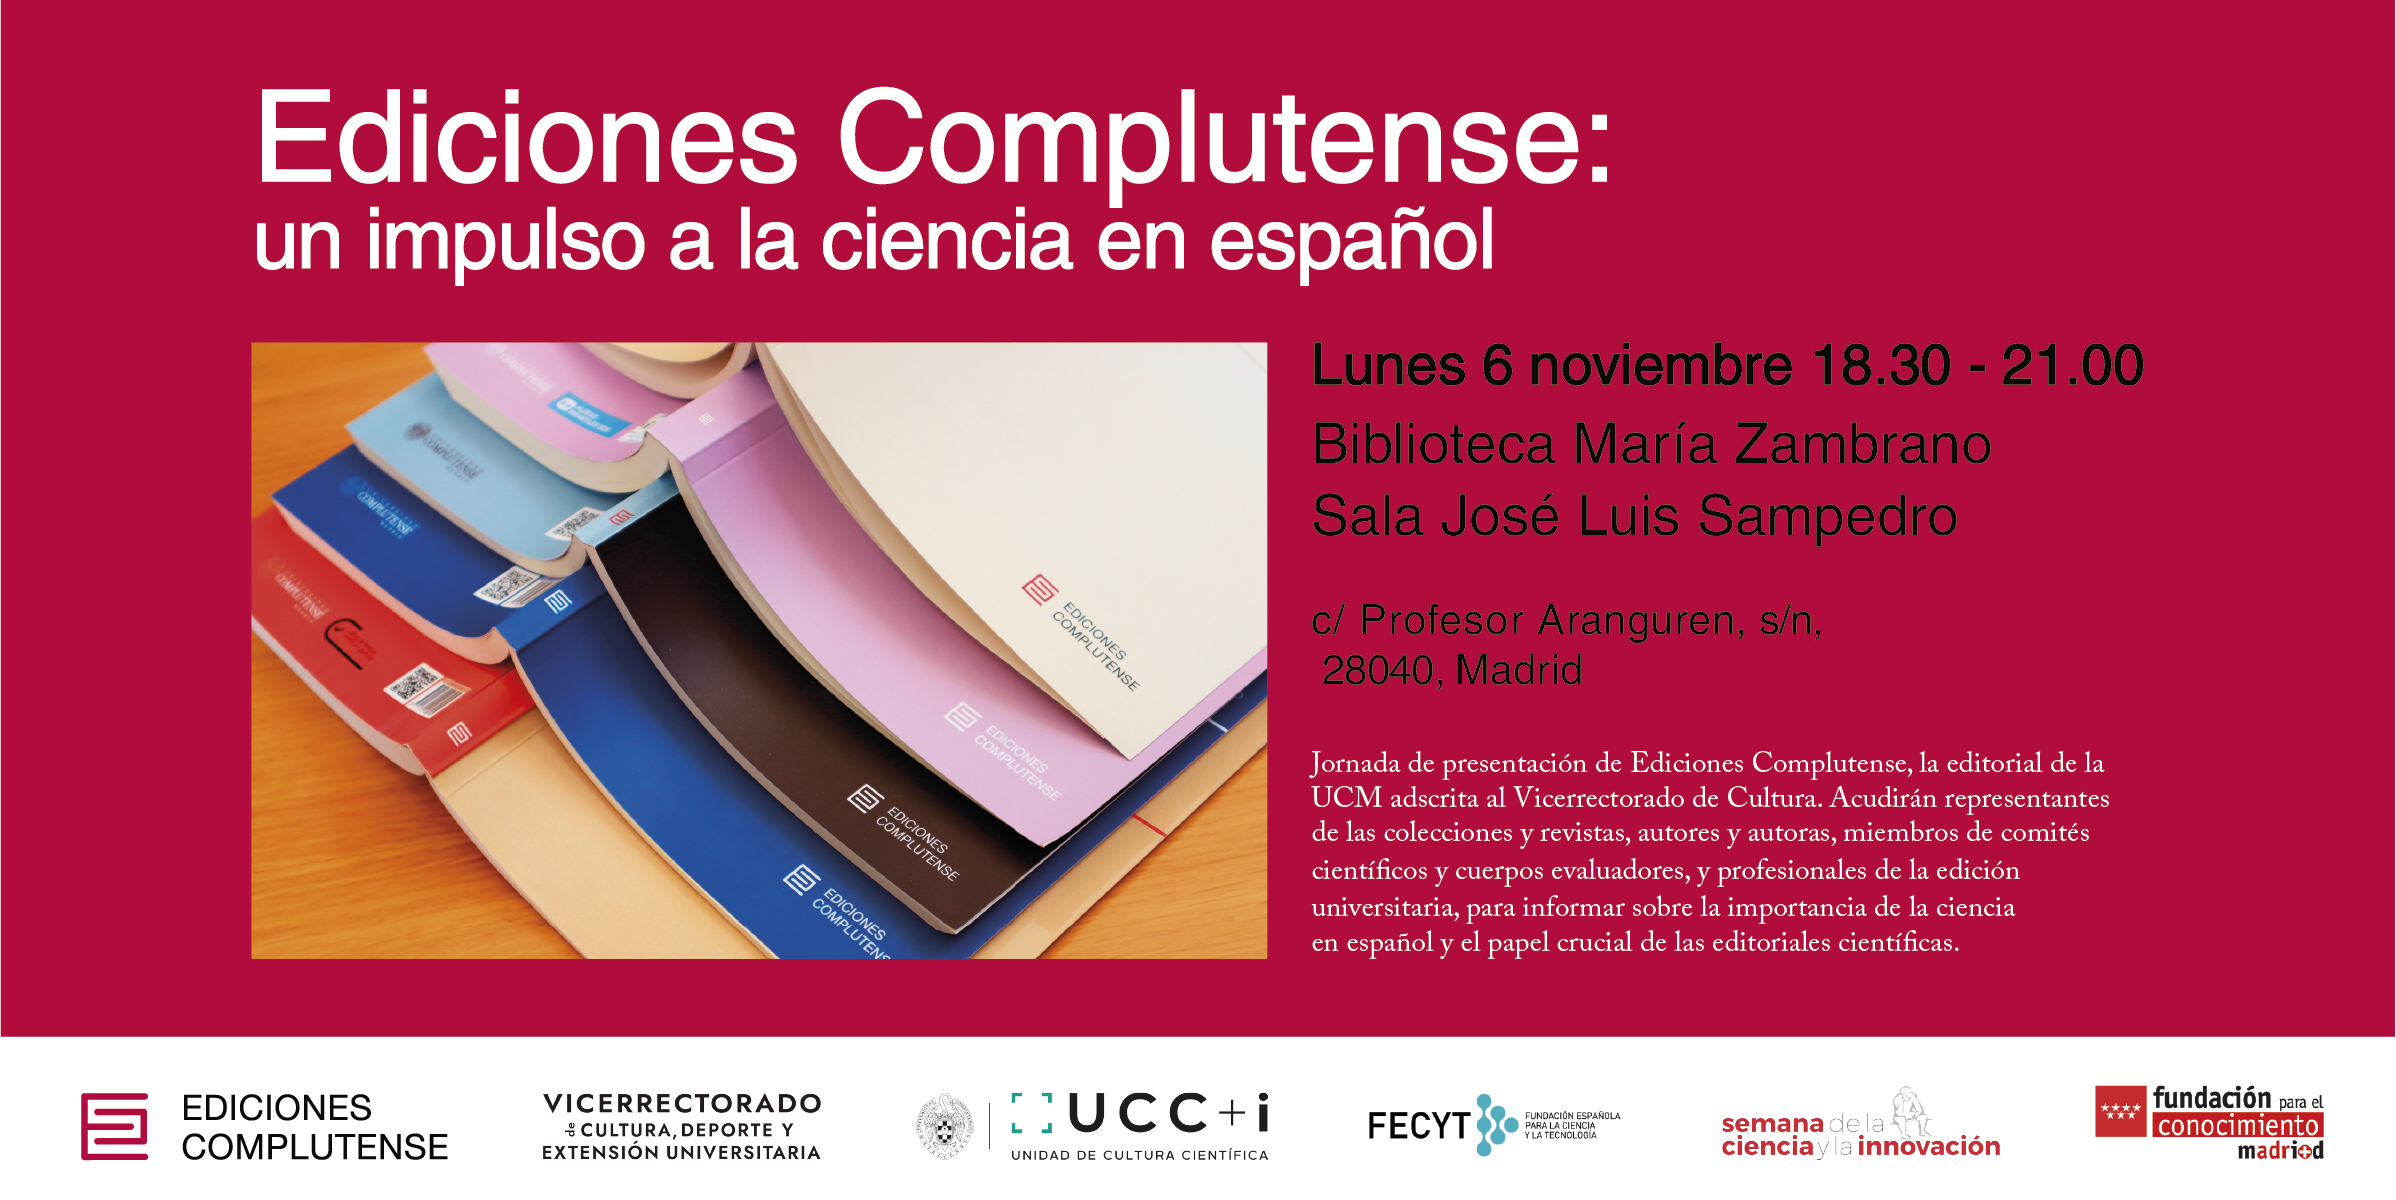 Ediciones Complutense: un impulso a la ciencia en español